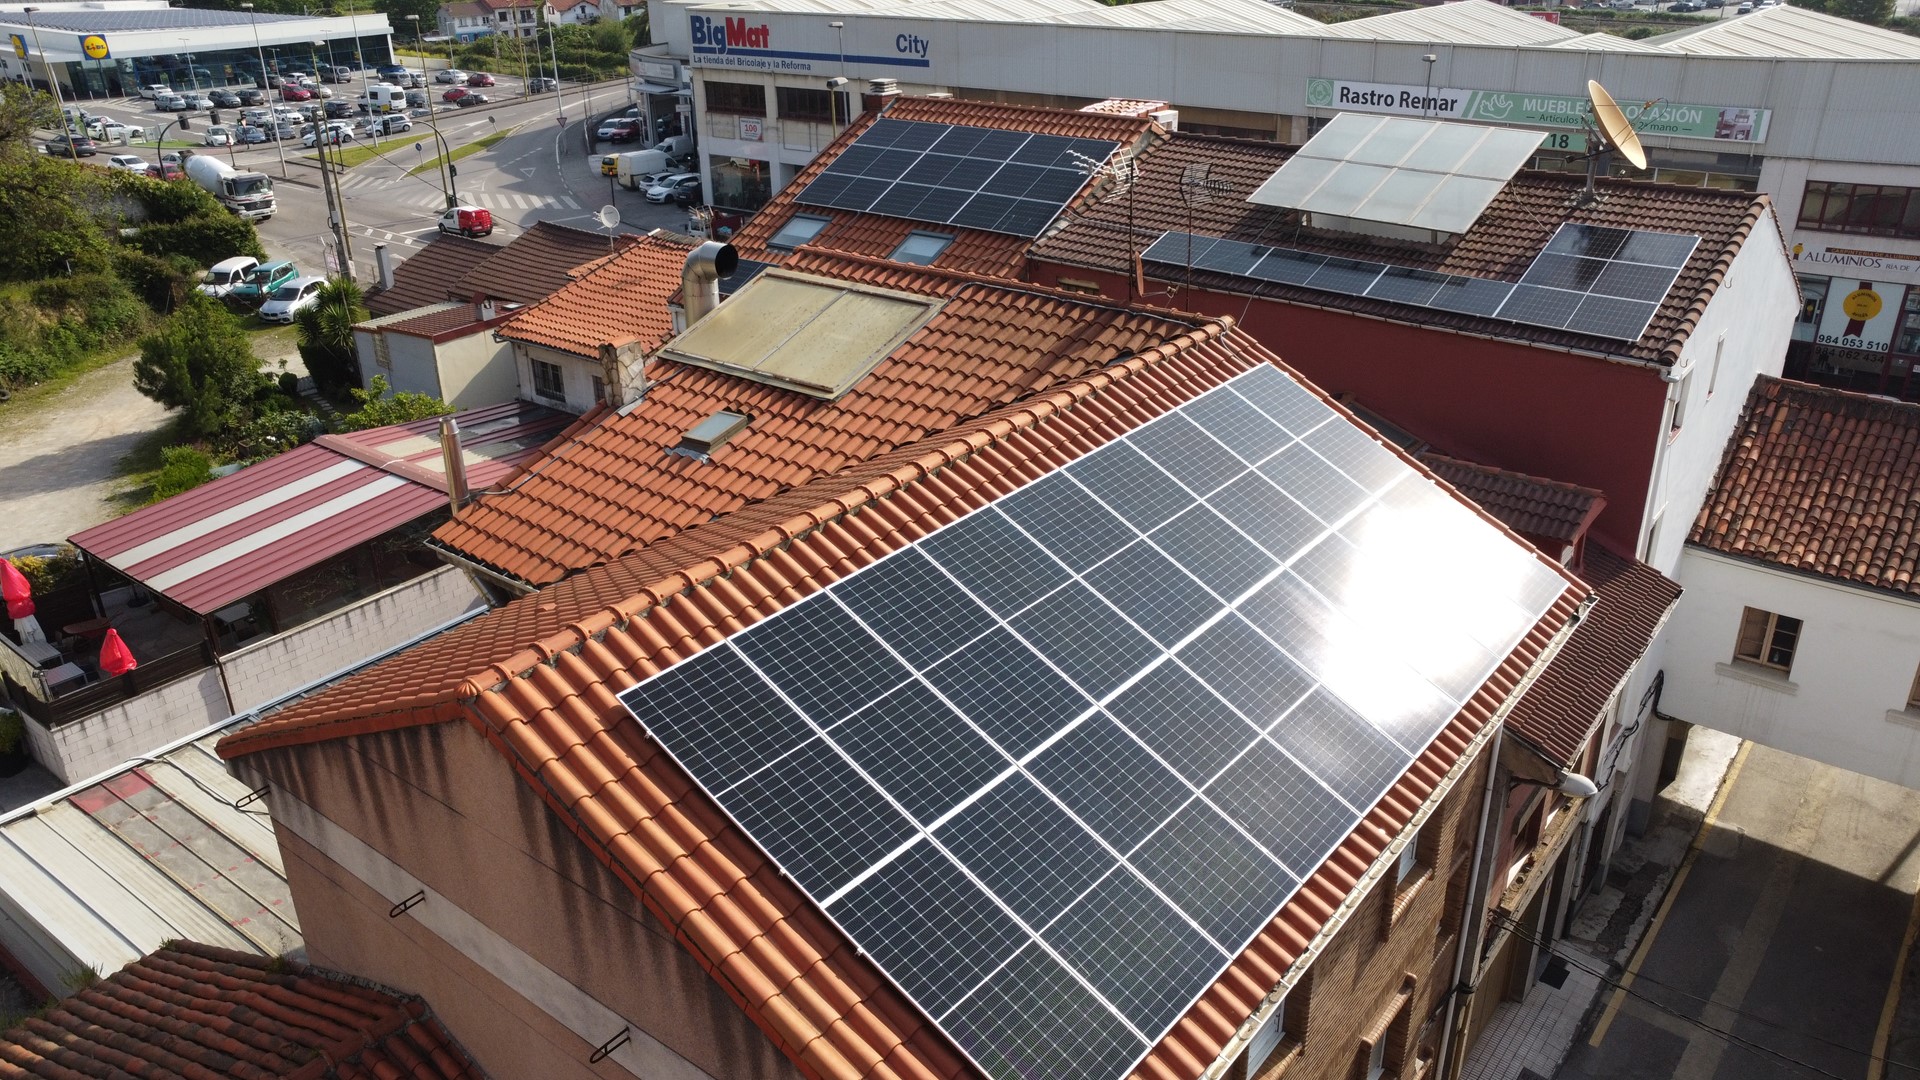 Autoconsumo fotovoltaico en hotel en Avilés